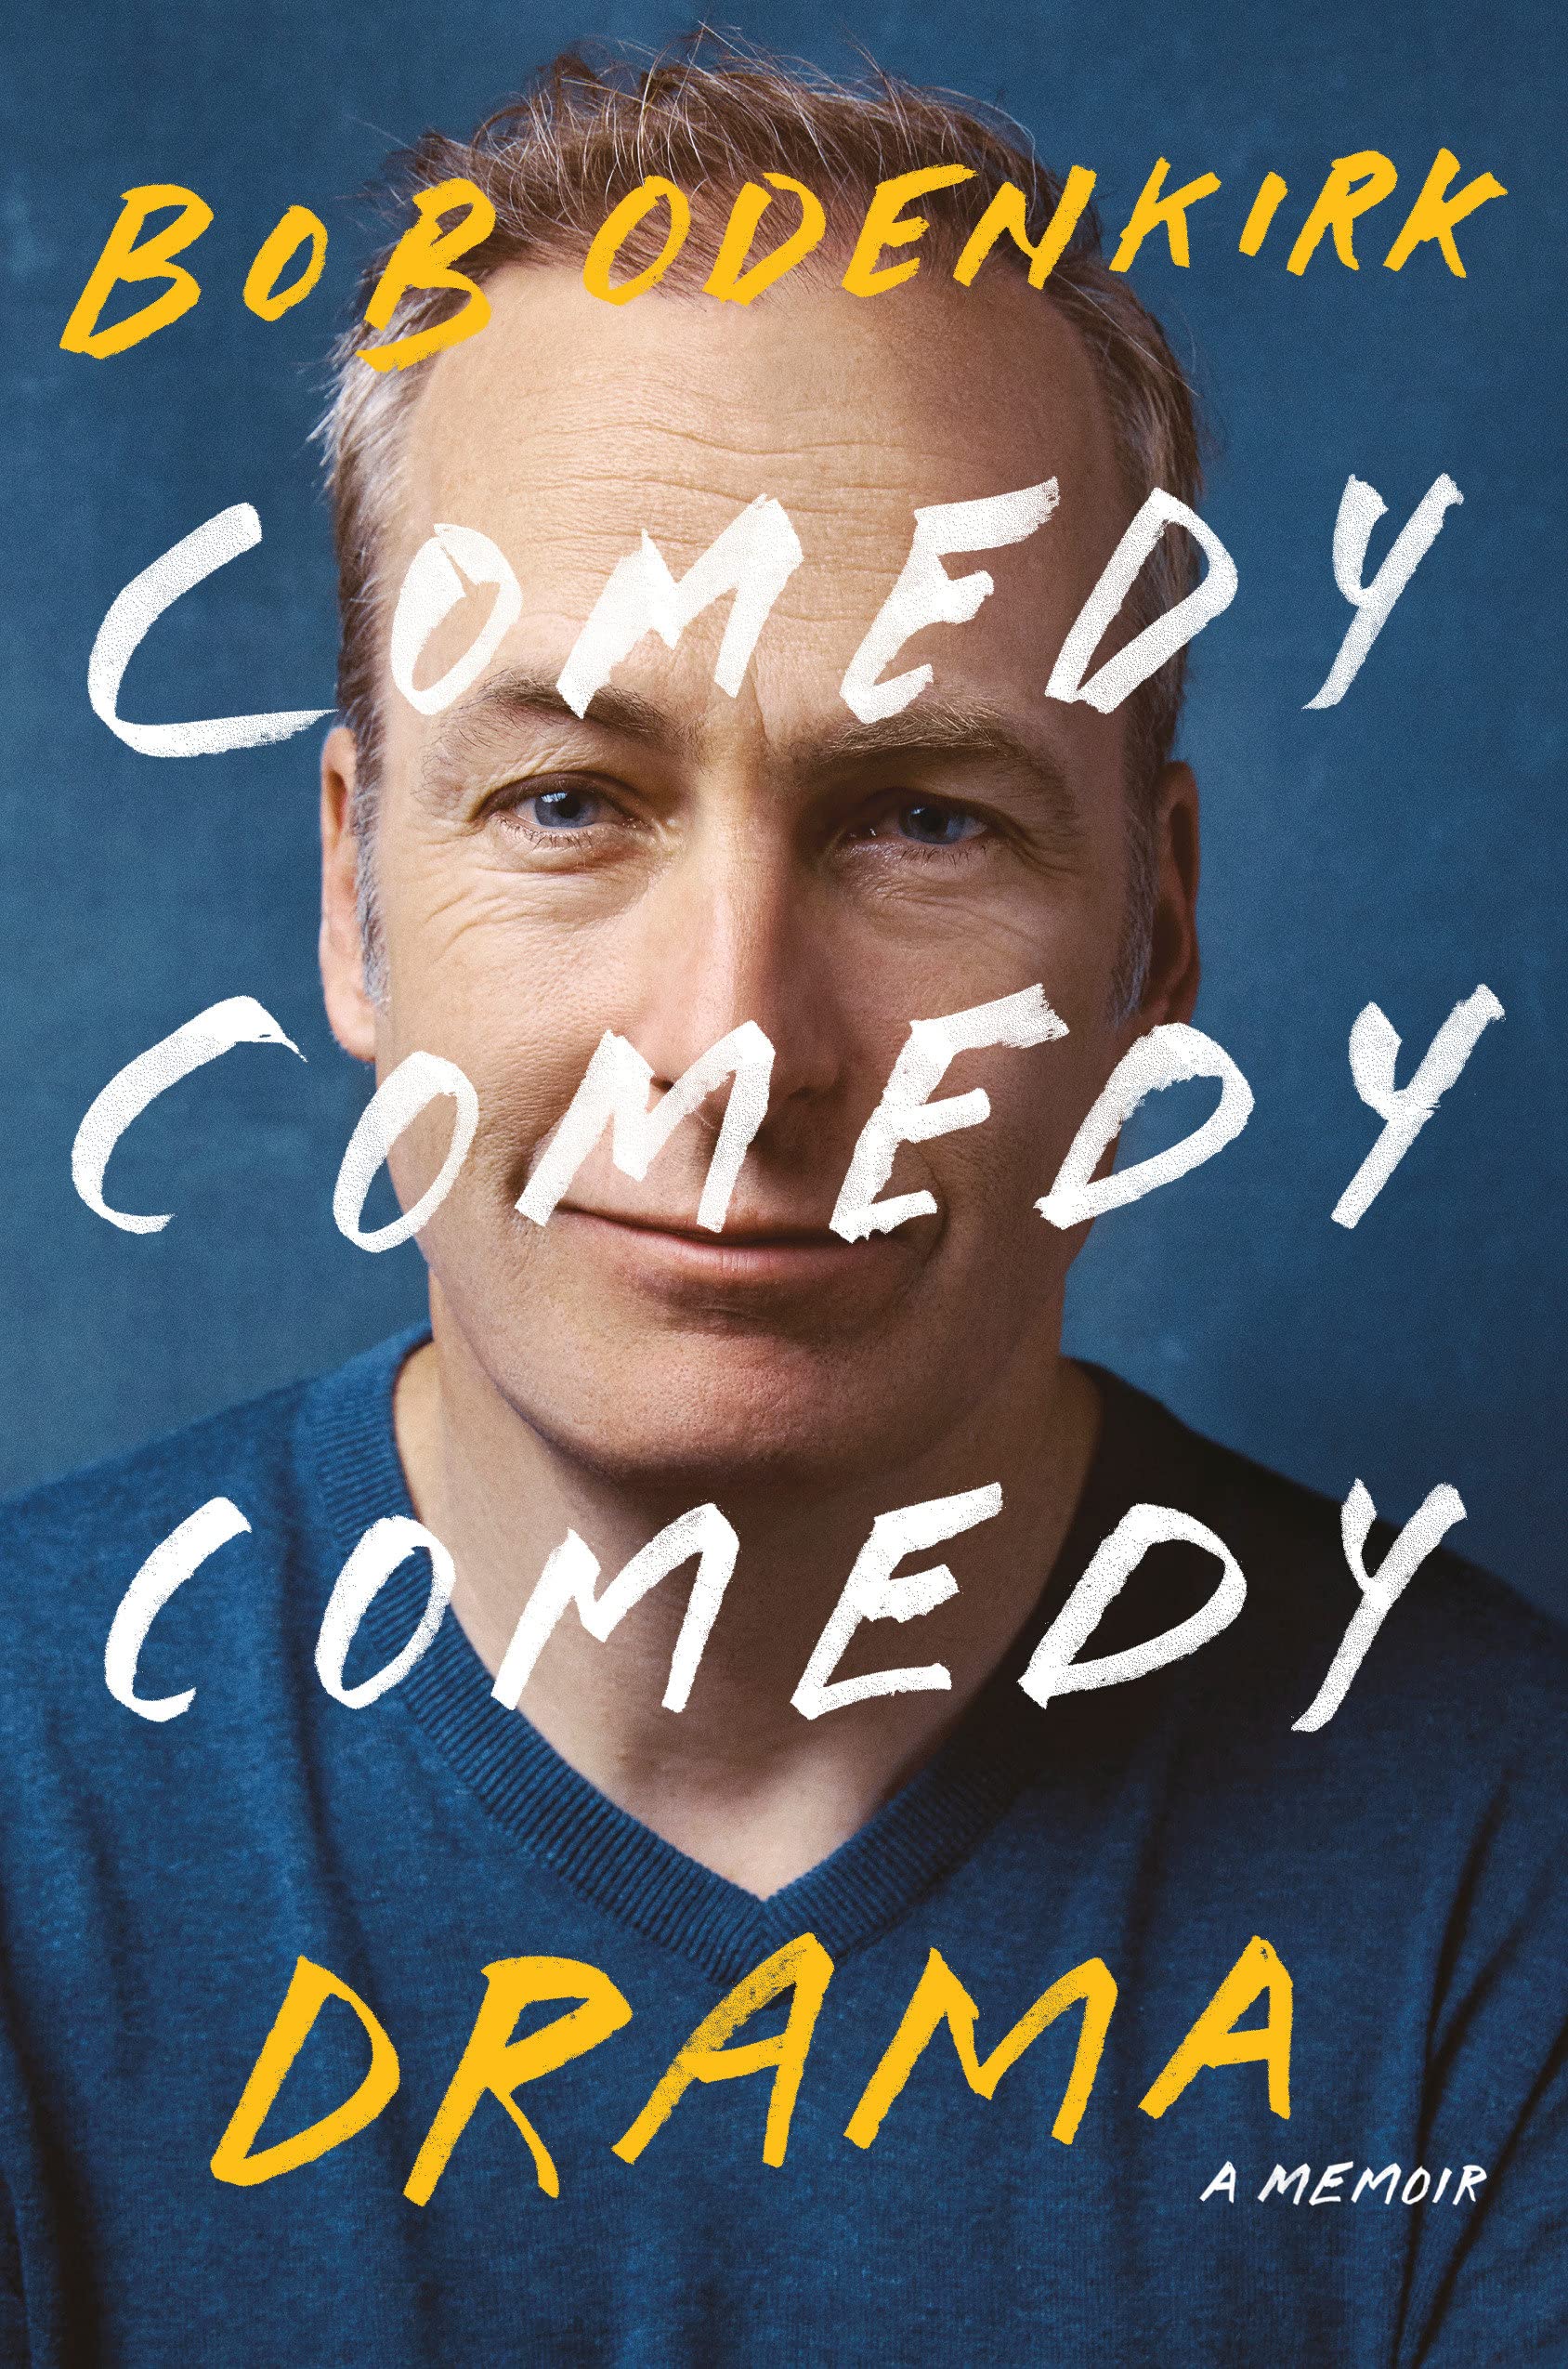 Book Review // Comedy Comedy Comedy Drama A Memoir Erie Reader